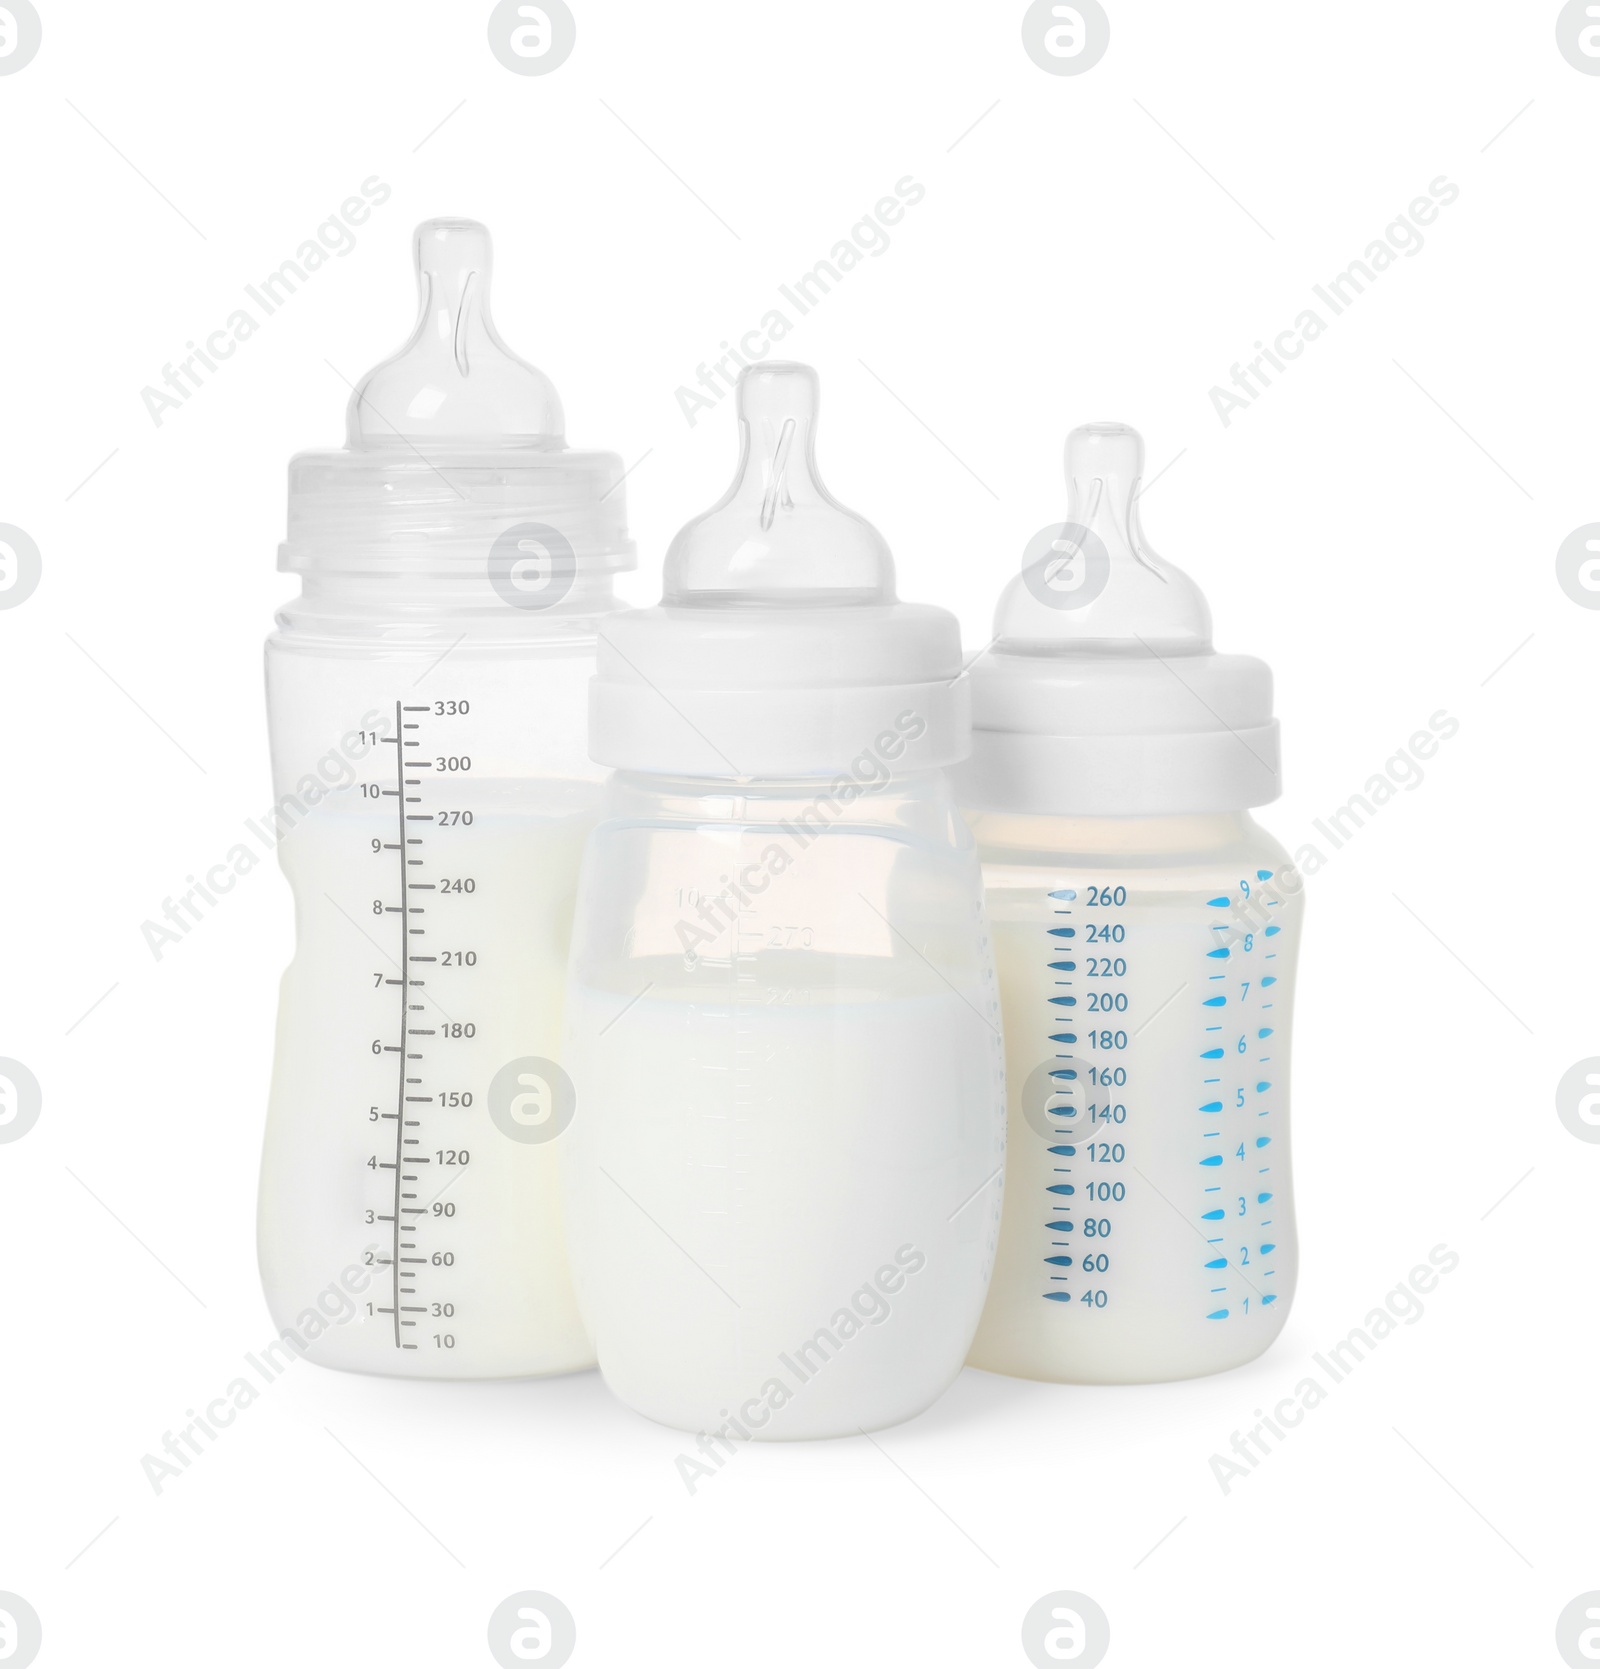 Photo of Three feeding bottles with infant formula on white background